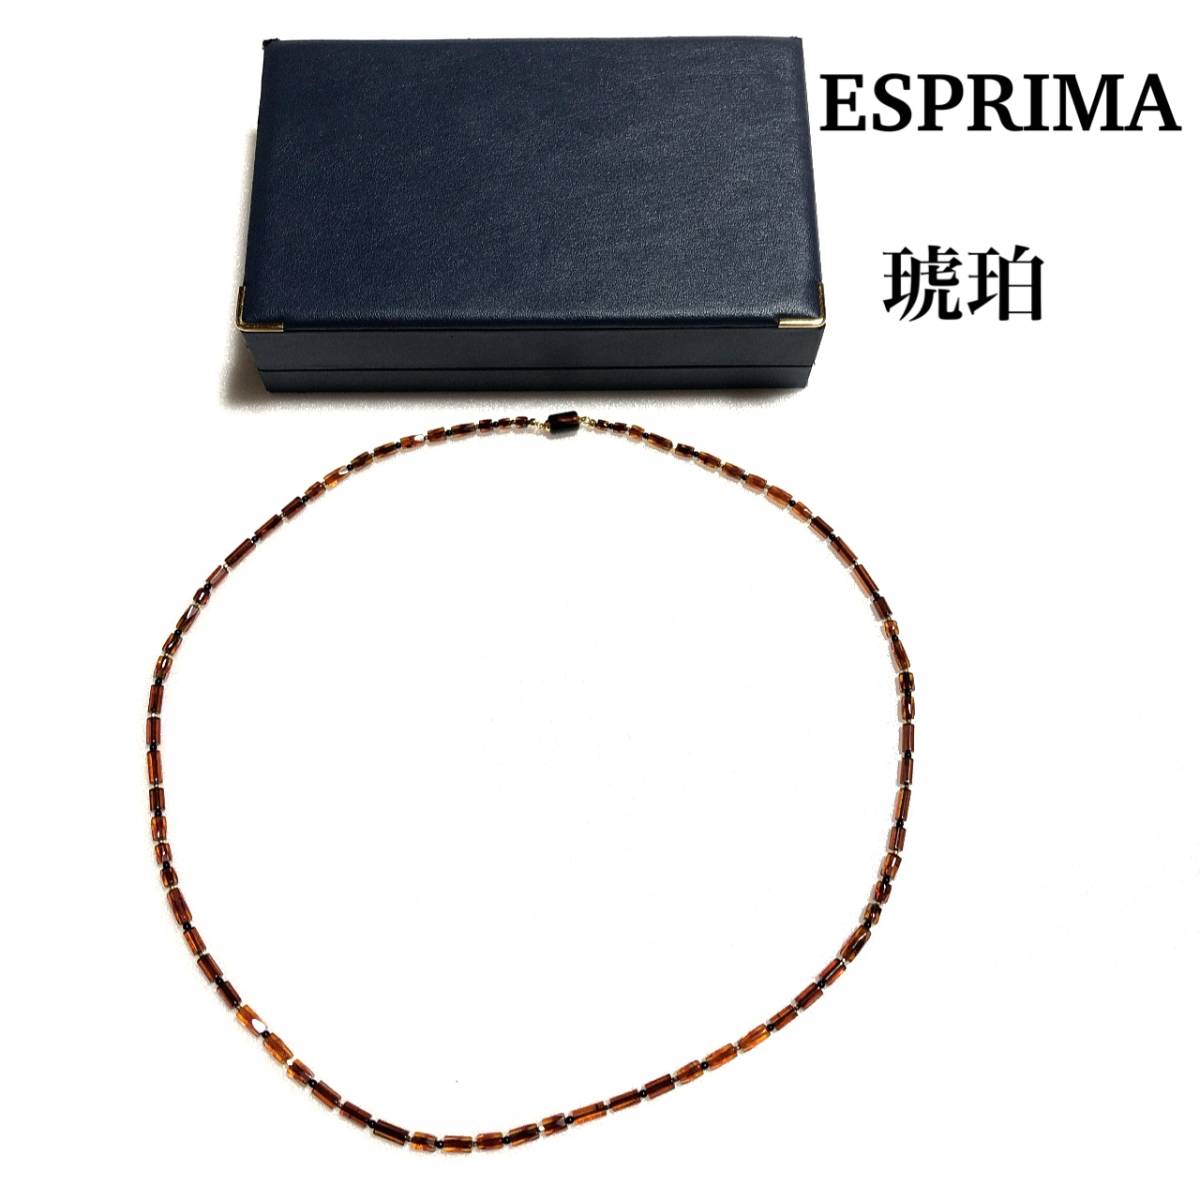 上品 琥珀 ESPRIMA ネックレス/エスプリ・マ/エスプリマ BOX付属